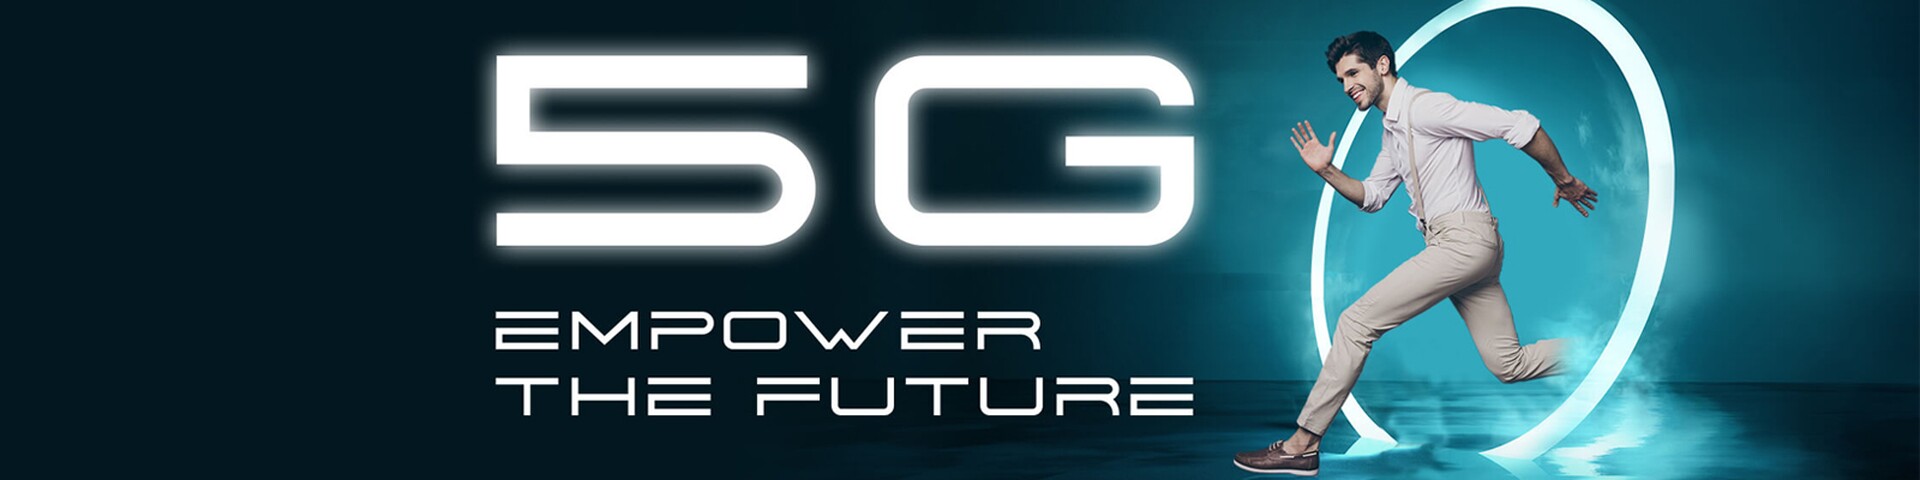 5G ile geleceği güçlendirmek